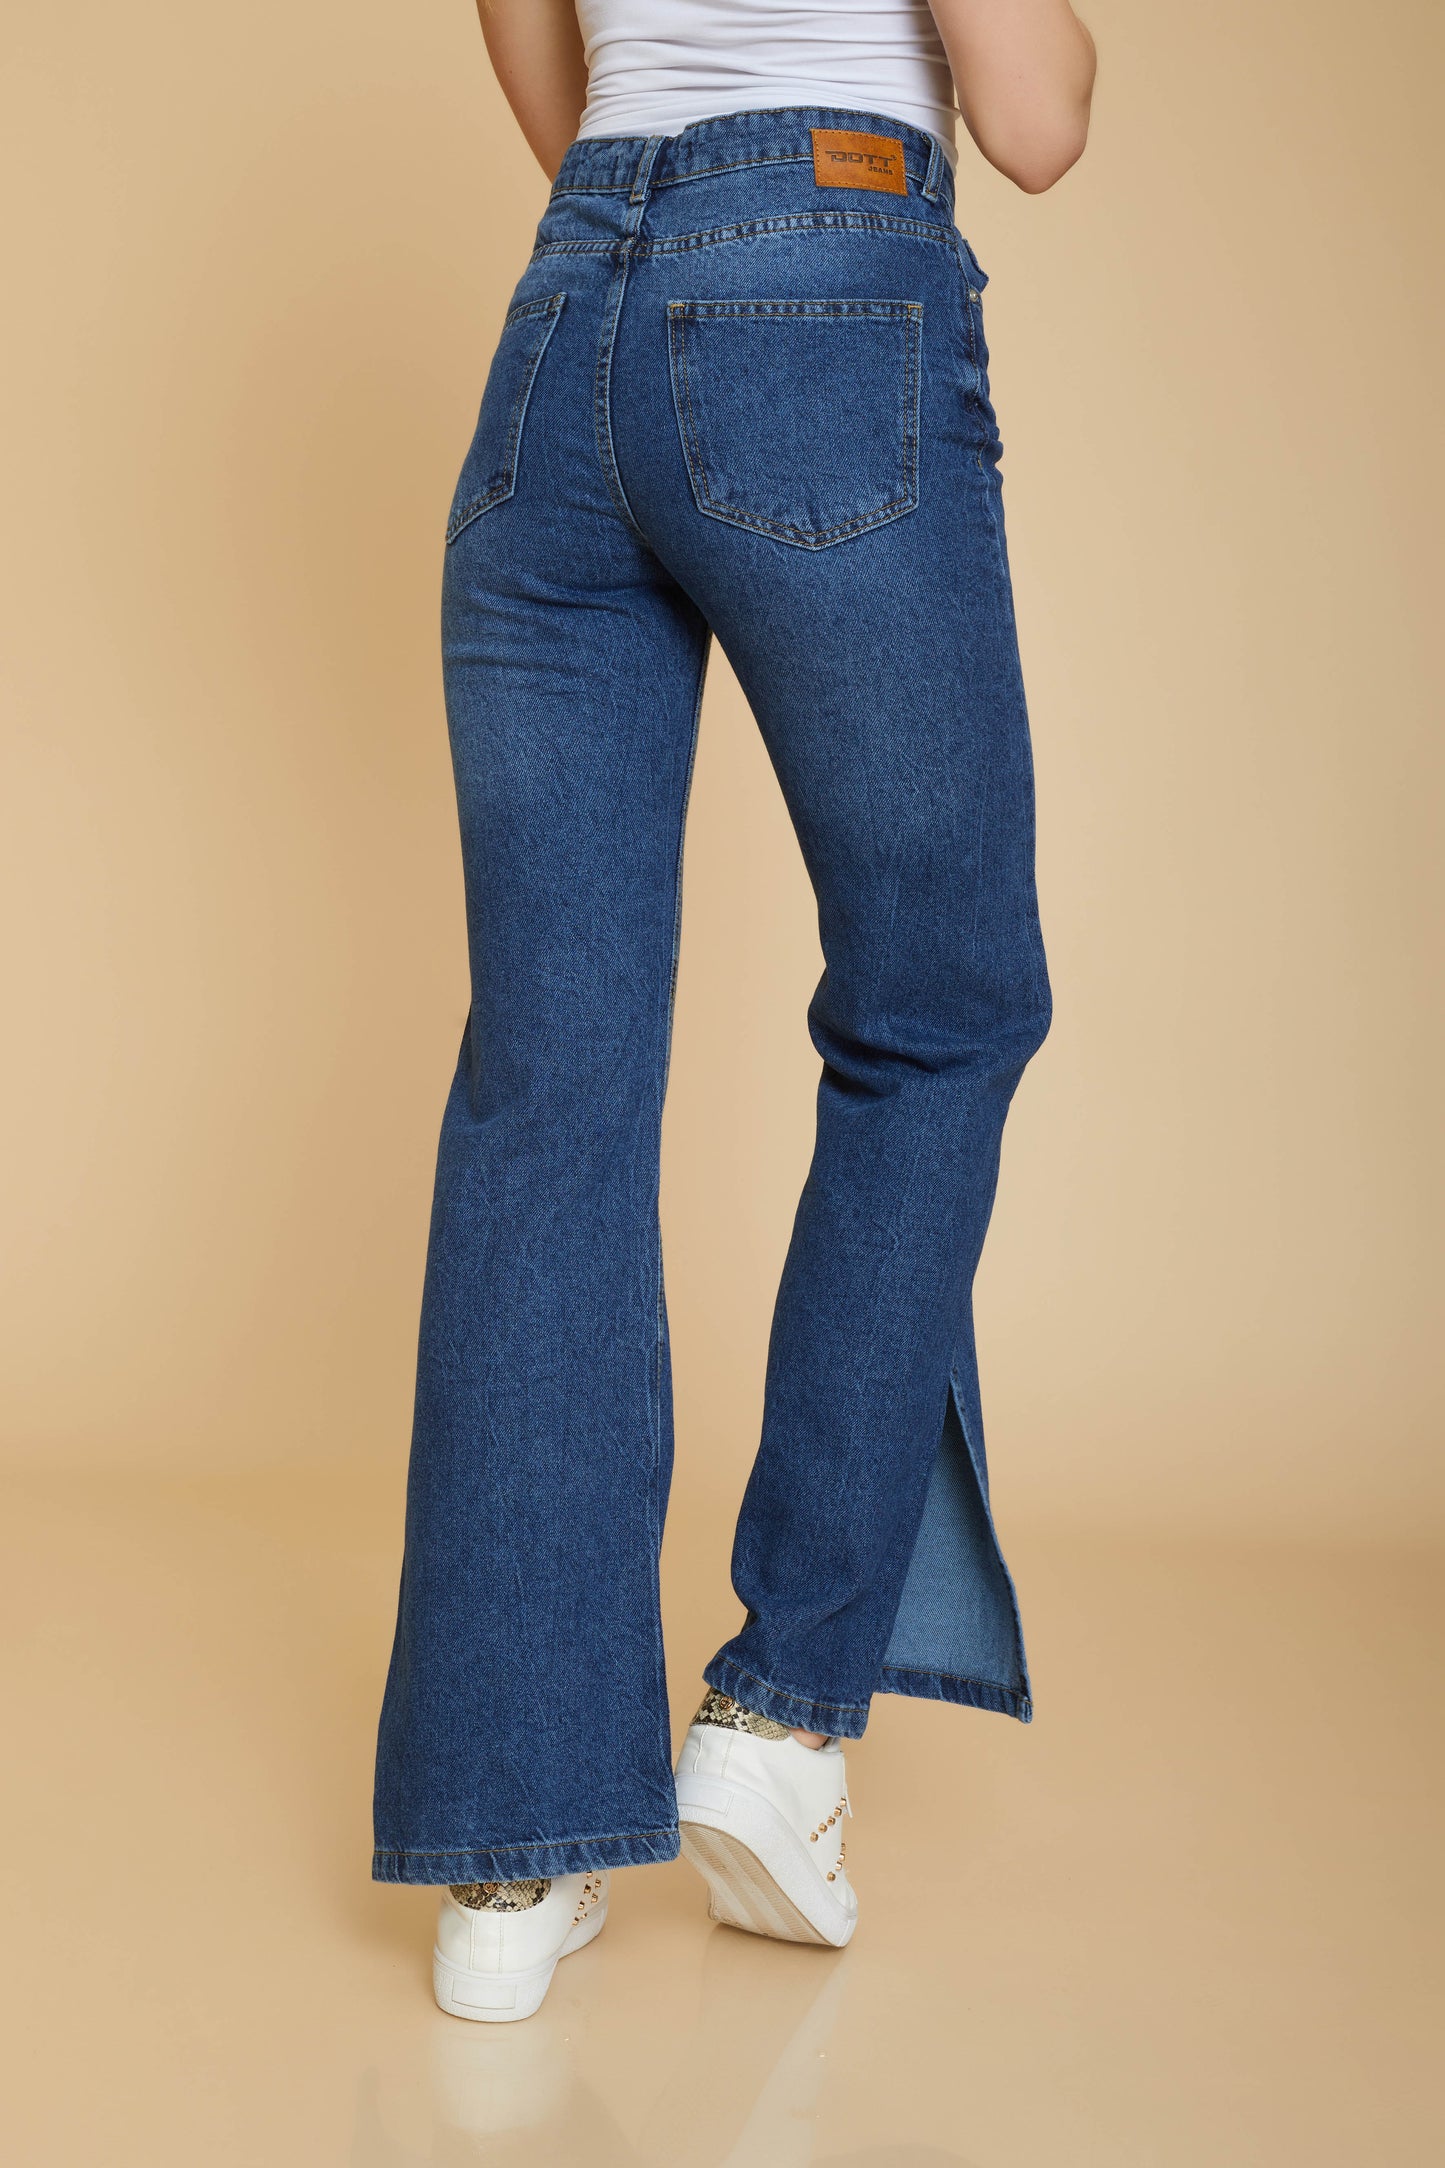 Jeans - wide leg ( Cut )